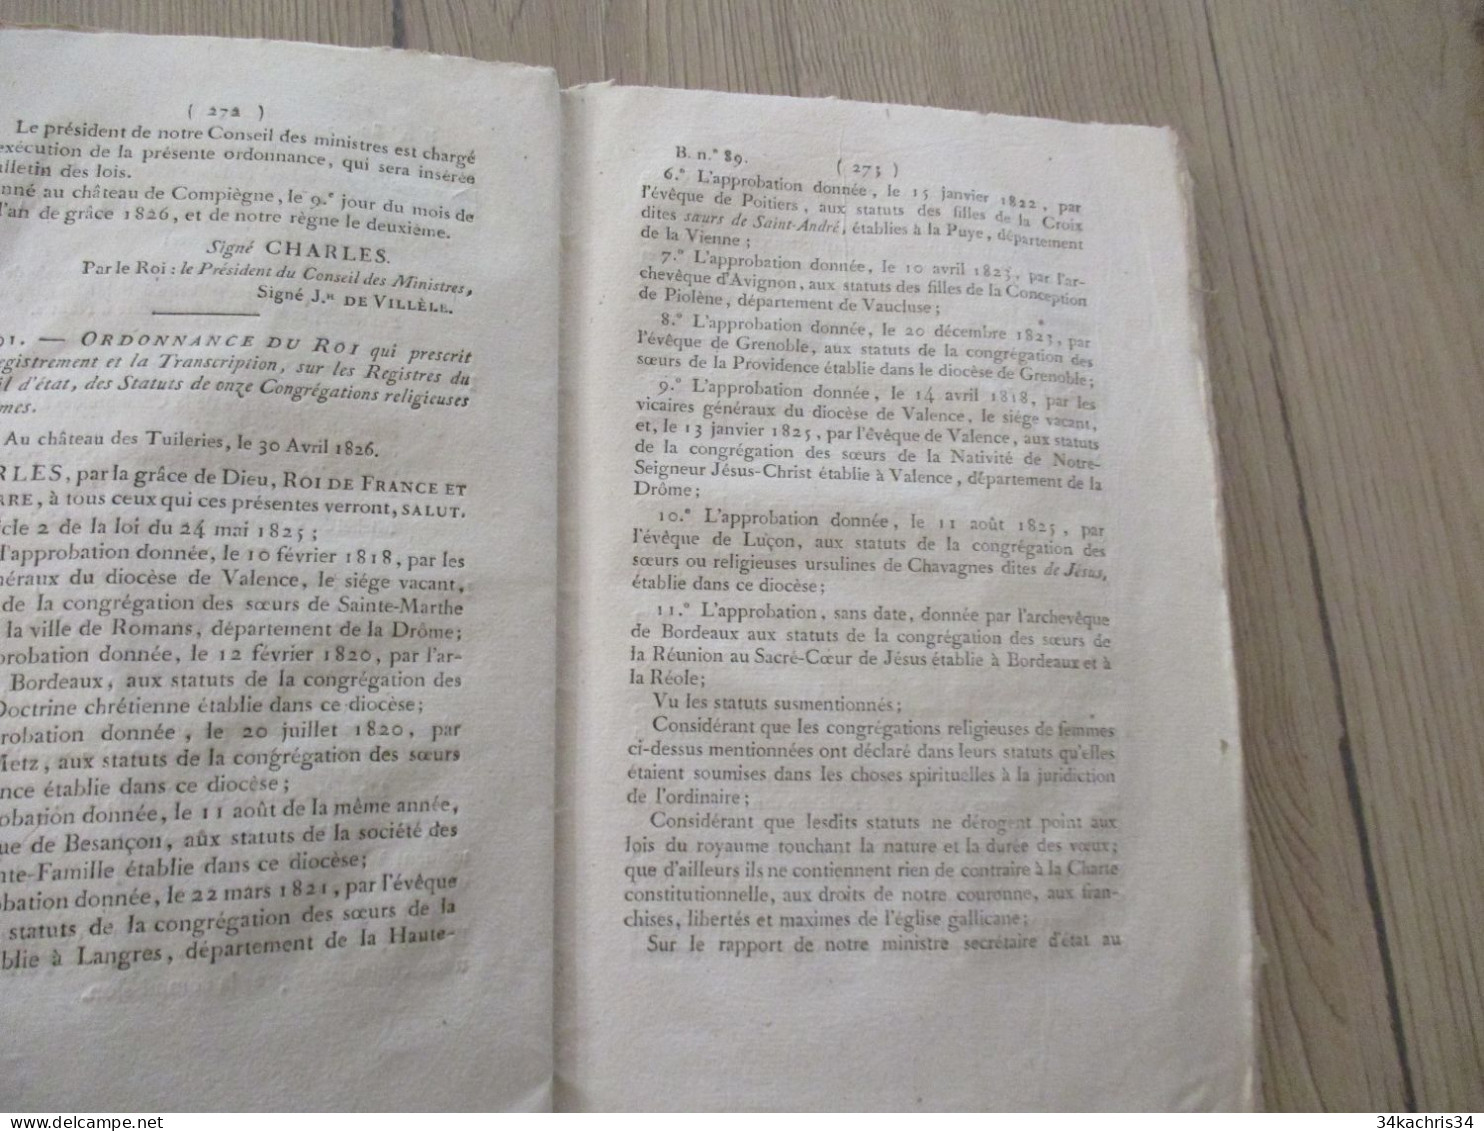 Bulletin des Lois N°89 09/05/1826 Idemnité des anciens colons de Saint Domingue 27 p liste des colons